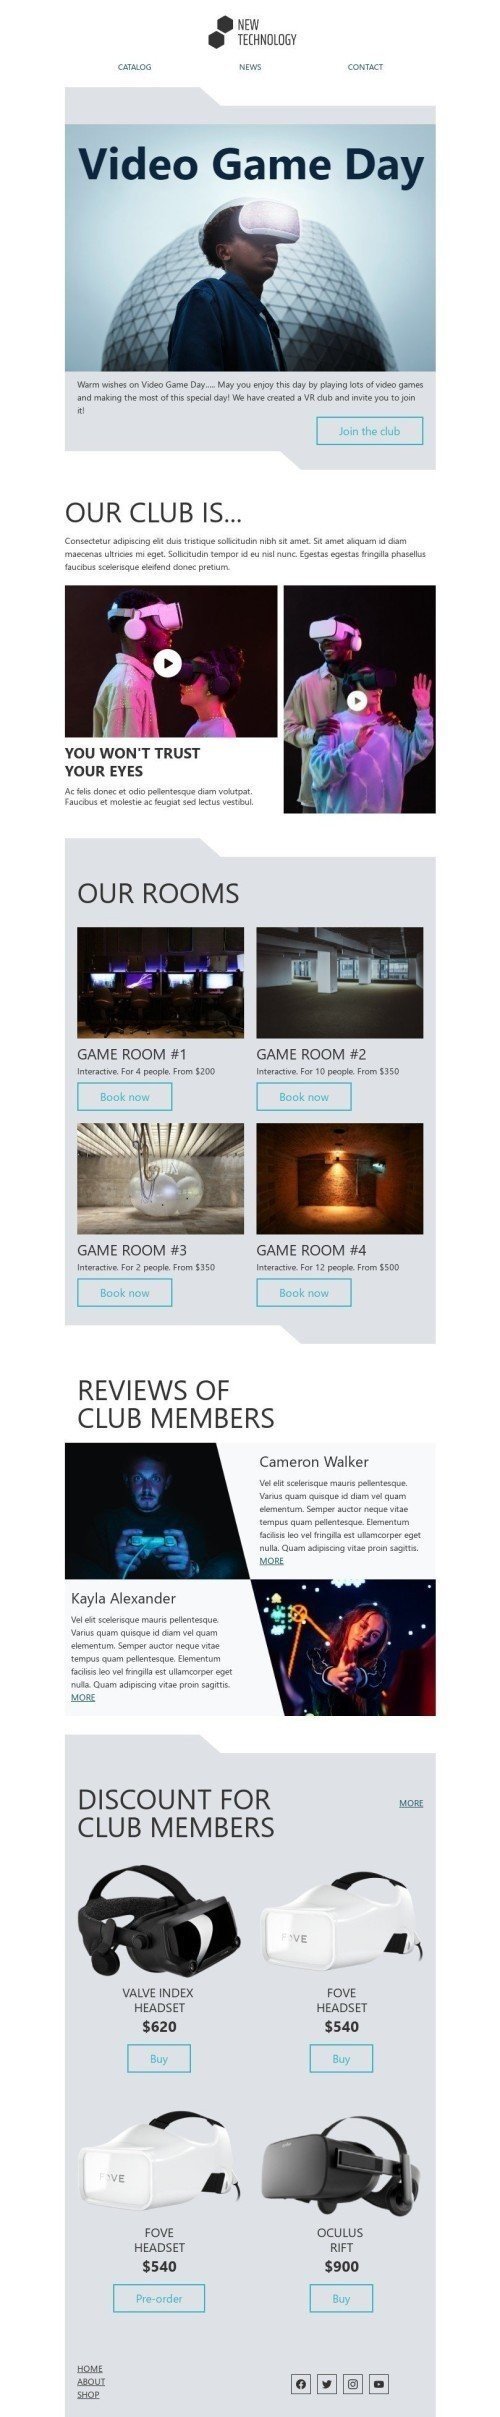 Modelo de E-mail de «Junte-se ao clube» de Dia do videogame para a indústria de Gadgets Visualização de desktop